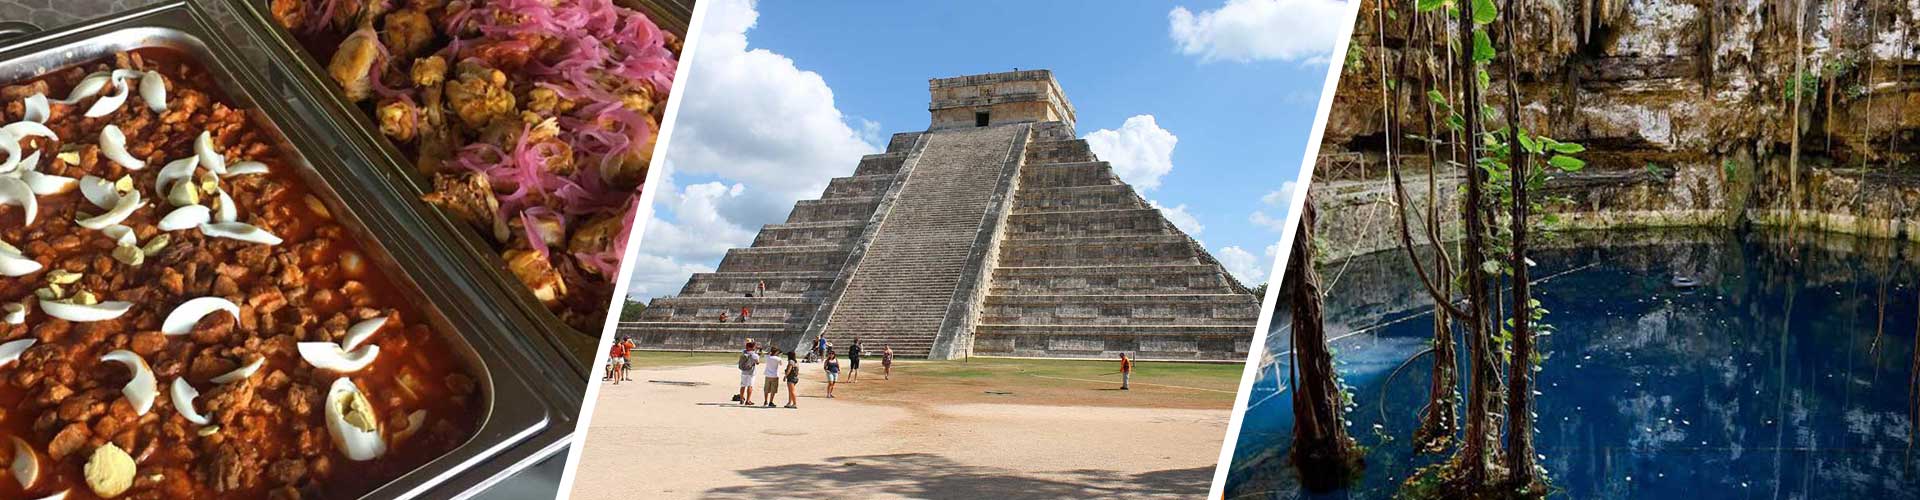 Chichén Itzá Private Tour